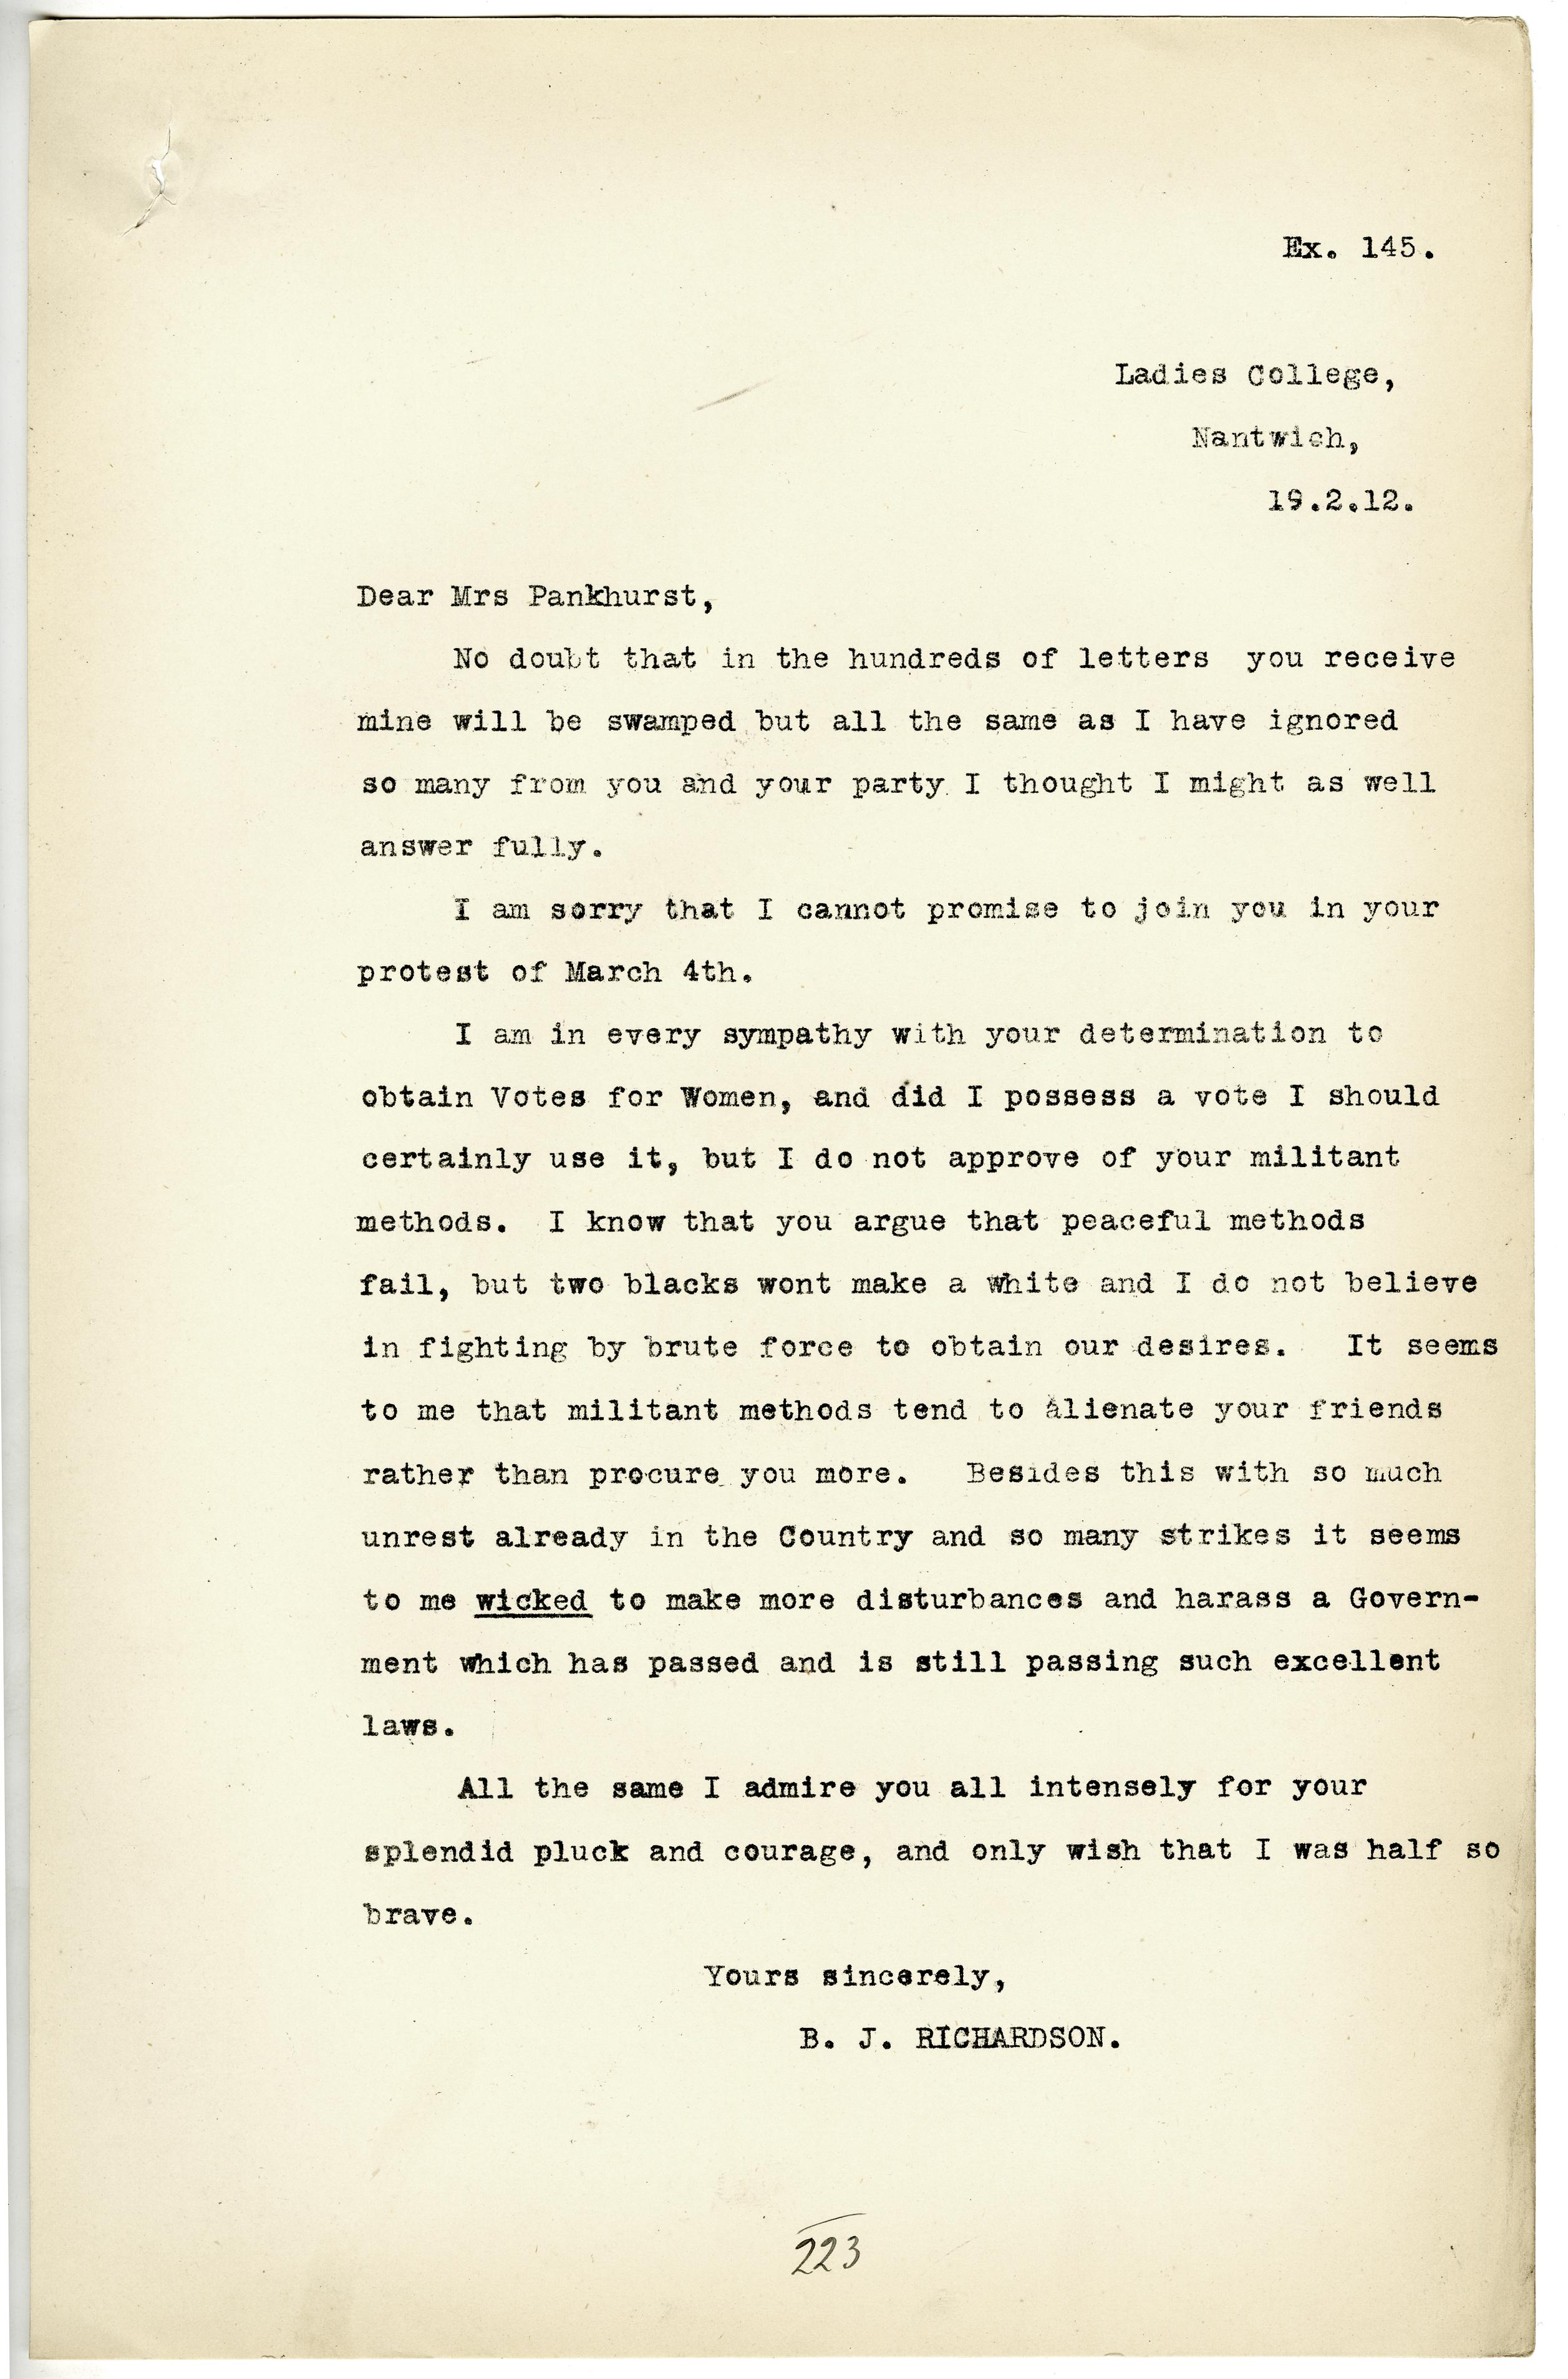 DPP1/23 Ex145 Letter from B J Richardson to Mrs Pankhurst 19 February 1912